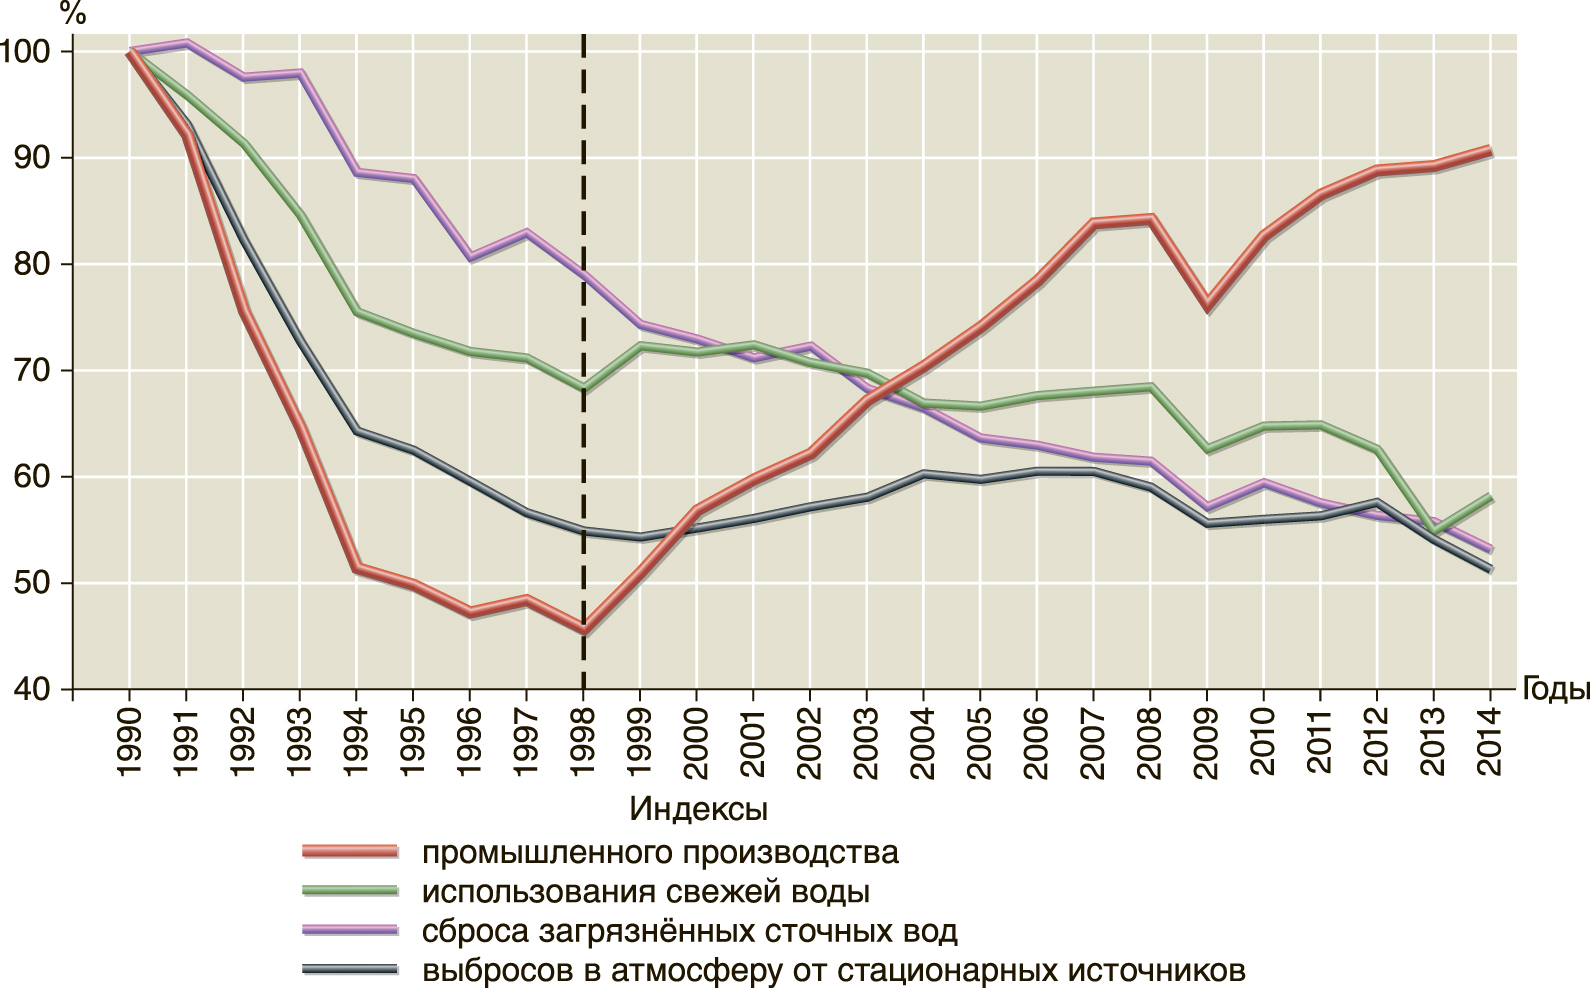  Индексы промышленности и воздействий на природу в России (1990 г. = 100%) 